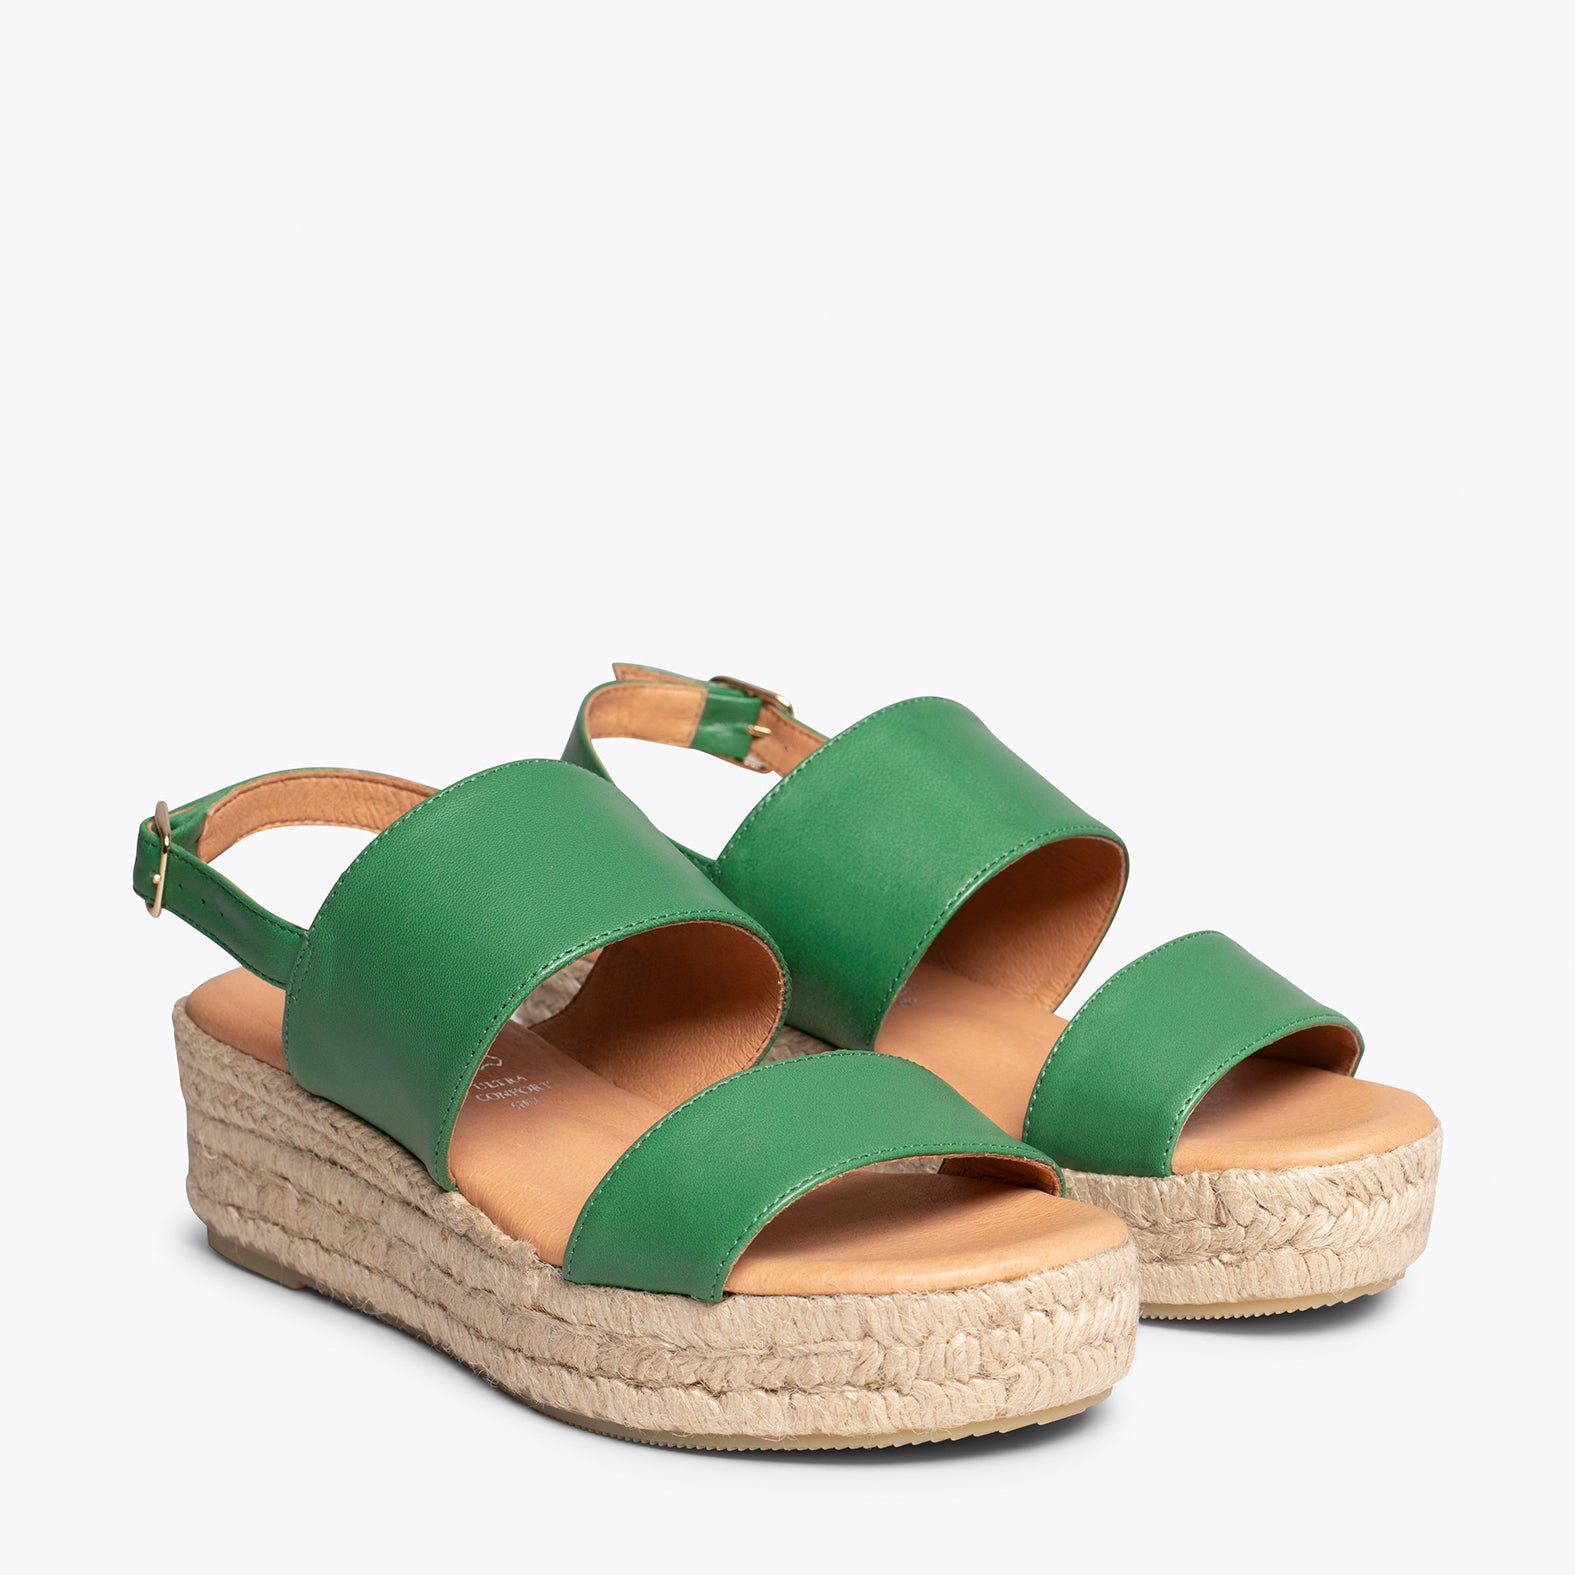 Sandalias de esparto con plataforma | Sandalias Verdes – miMaO ShopOnline